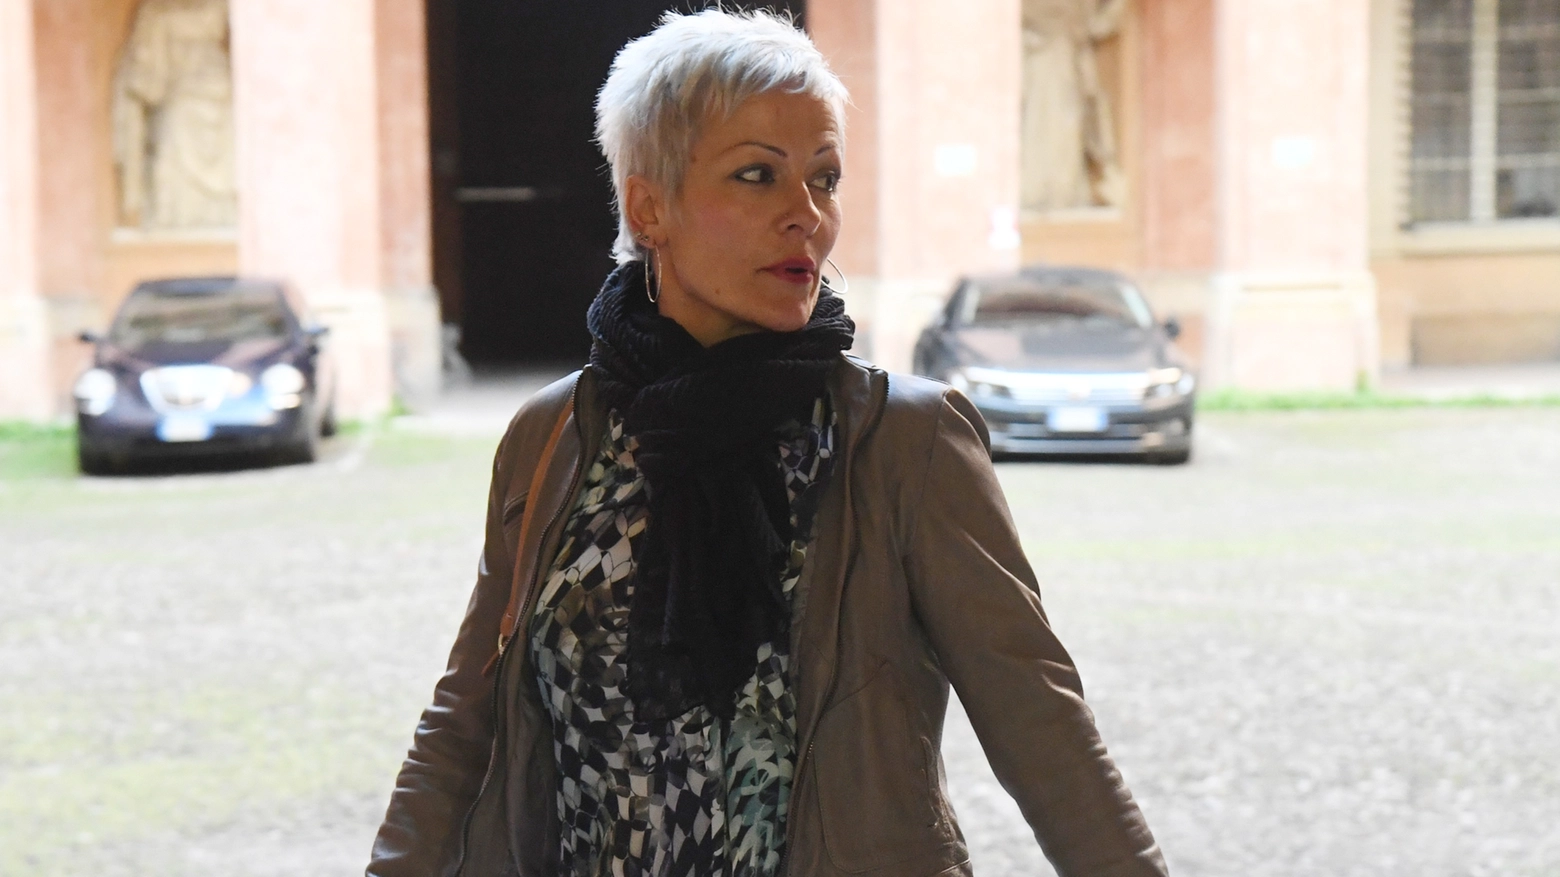 Daniela Poggiali all'arrivo in tribunale a Bologna (foto Schicchi)